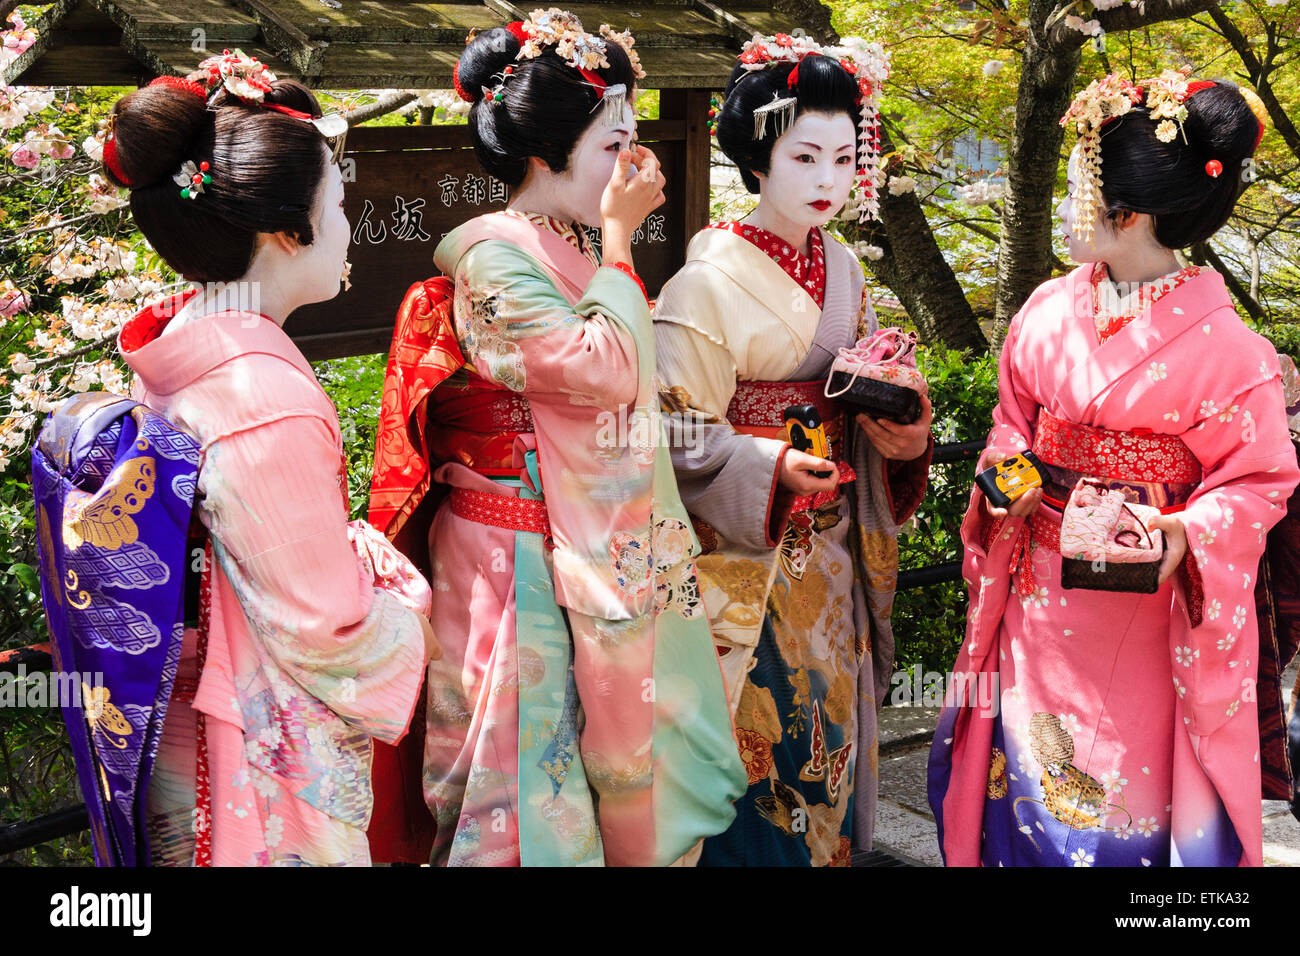 Japón, kimono, primavera, Kyoto, geisha, flor, niña, belleza, mujer, maiko,  gion, diversión, disfraz, tradición, japon, danse, shimada, geiko,  japanesecolors 3844x2615 fondo de pantalla